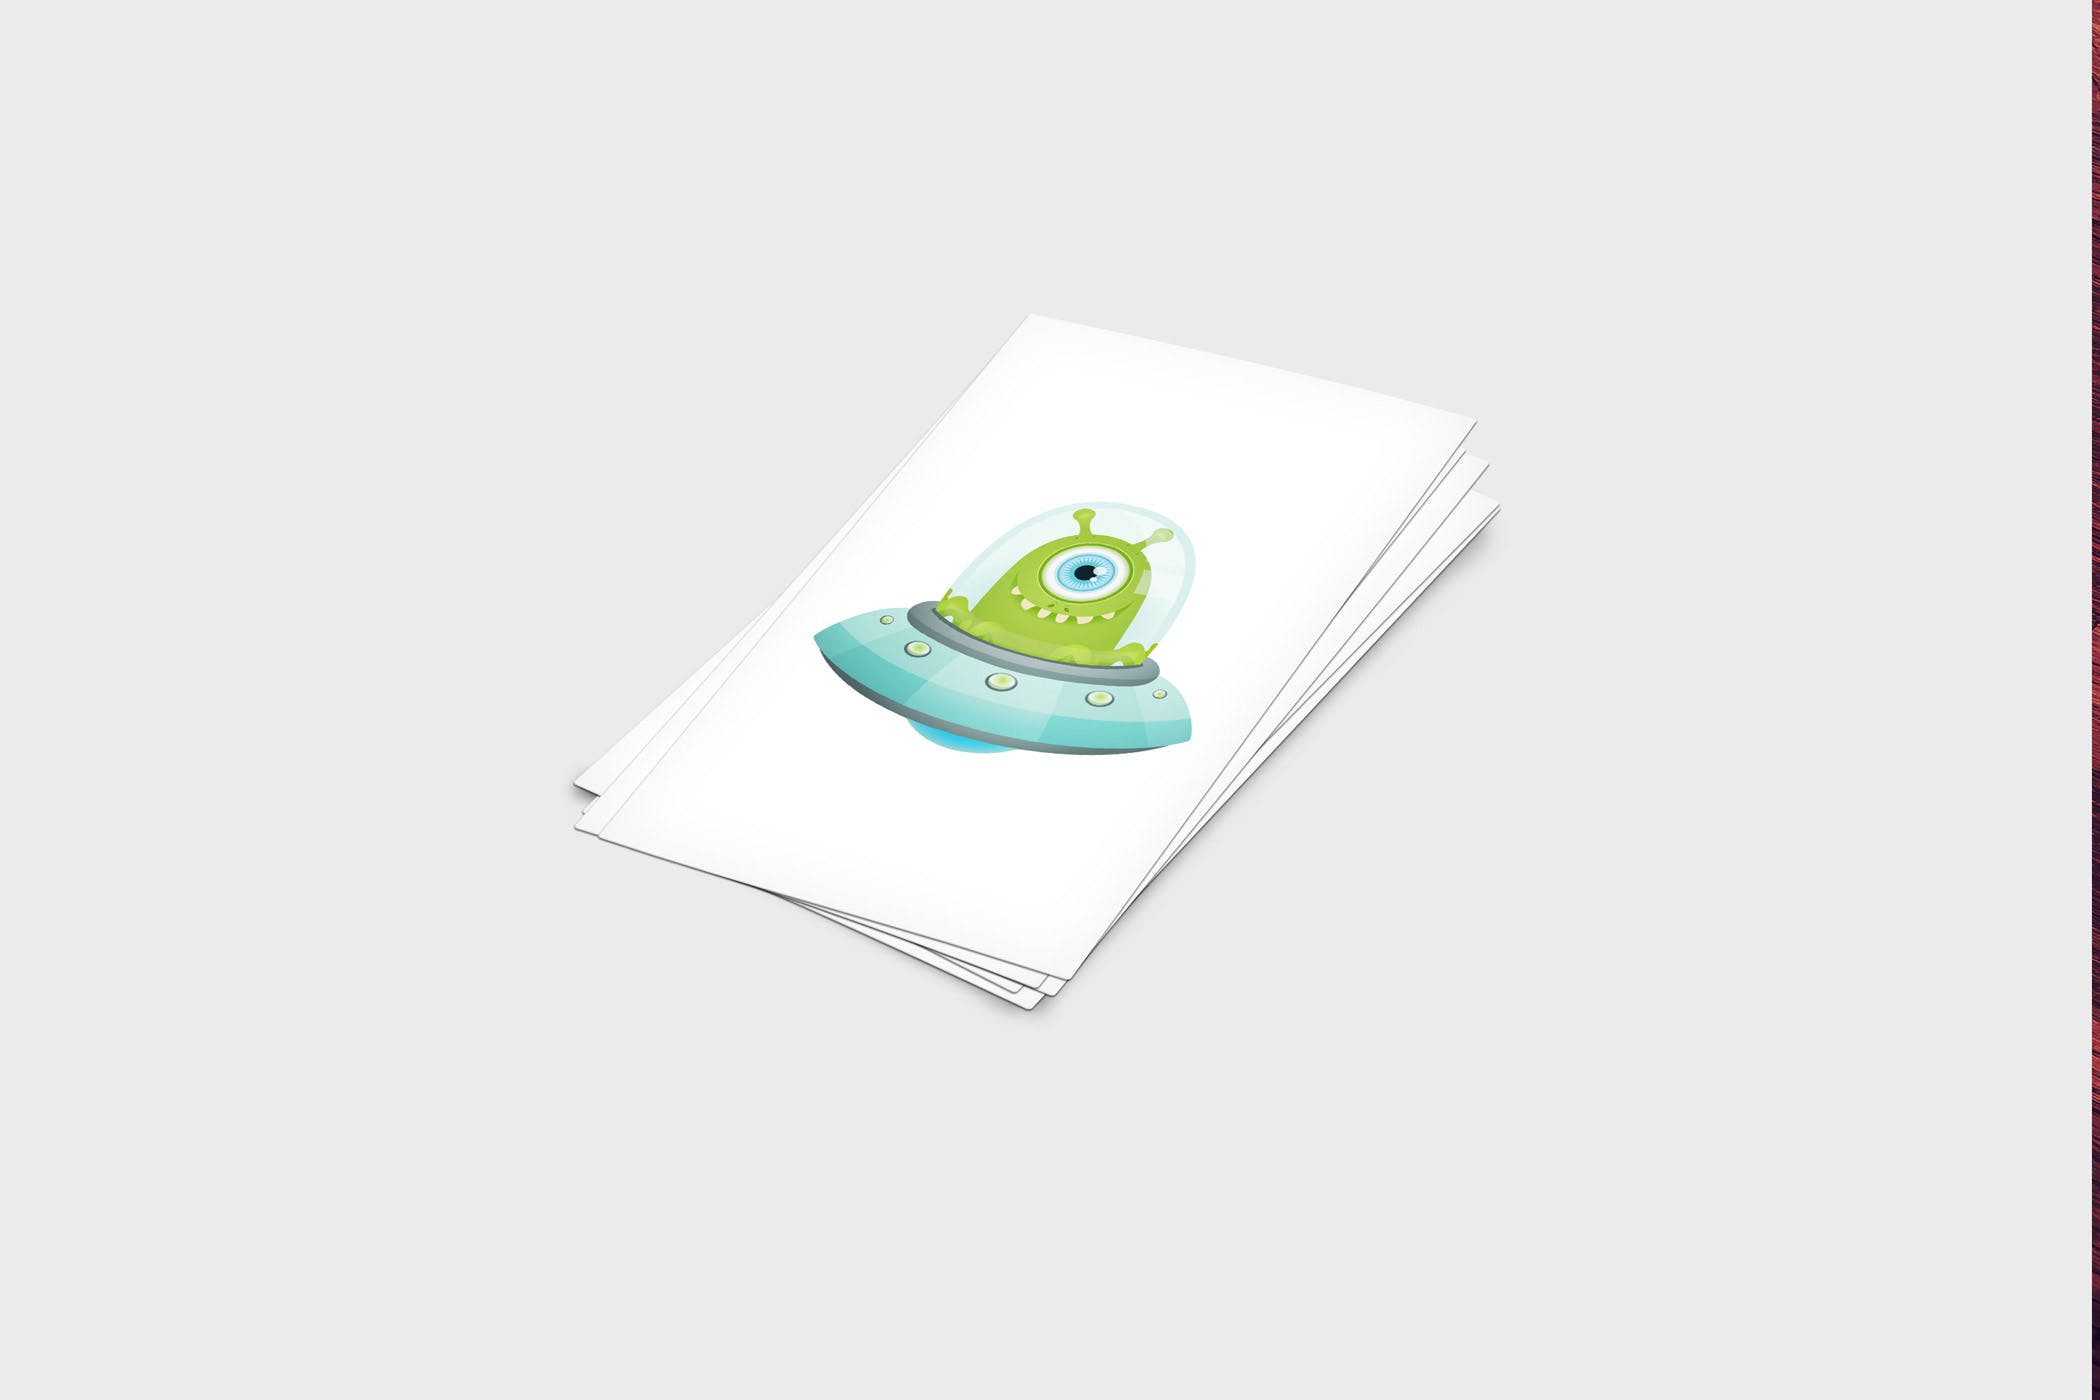 企业名片设计效果图展示样机素材中国精选模板 4 Business Card Mock-Up Template插图(2)